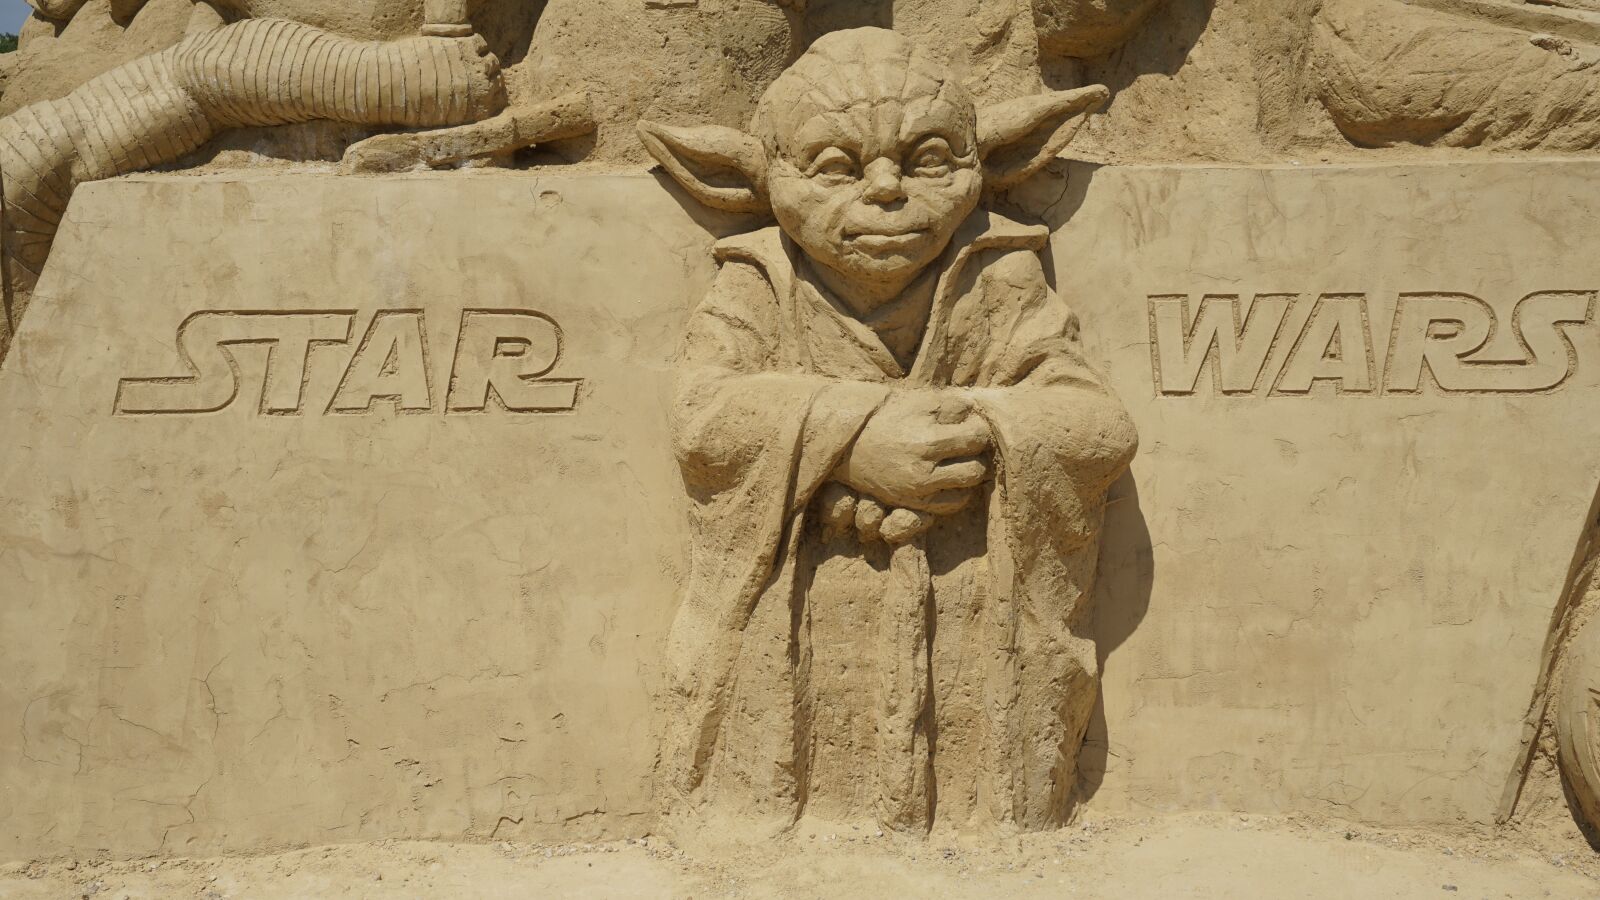 Sony a6000 sample photo. Yoda, star wars, sand photography